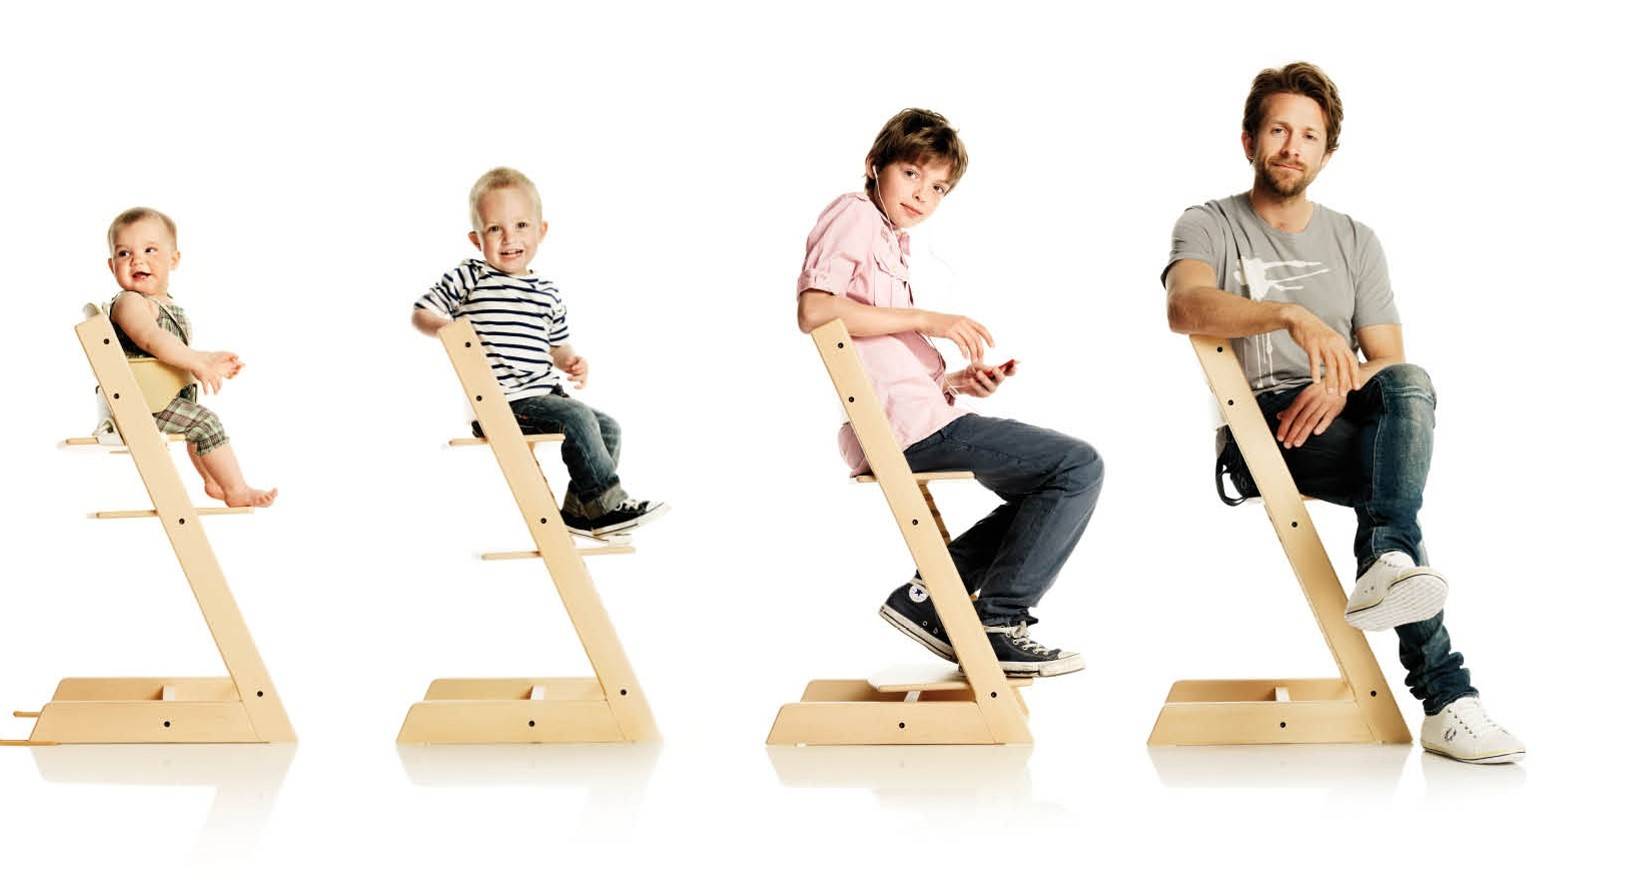 Рейтинг топ-7 лучших растущих стульев для ребенка: какой купить, плюсы и минусы, отзывы